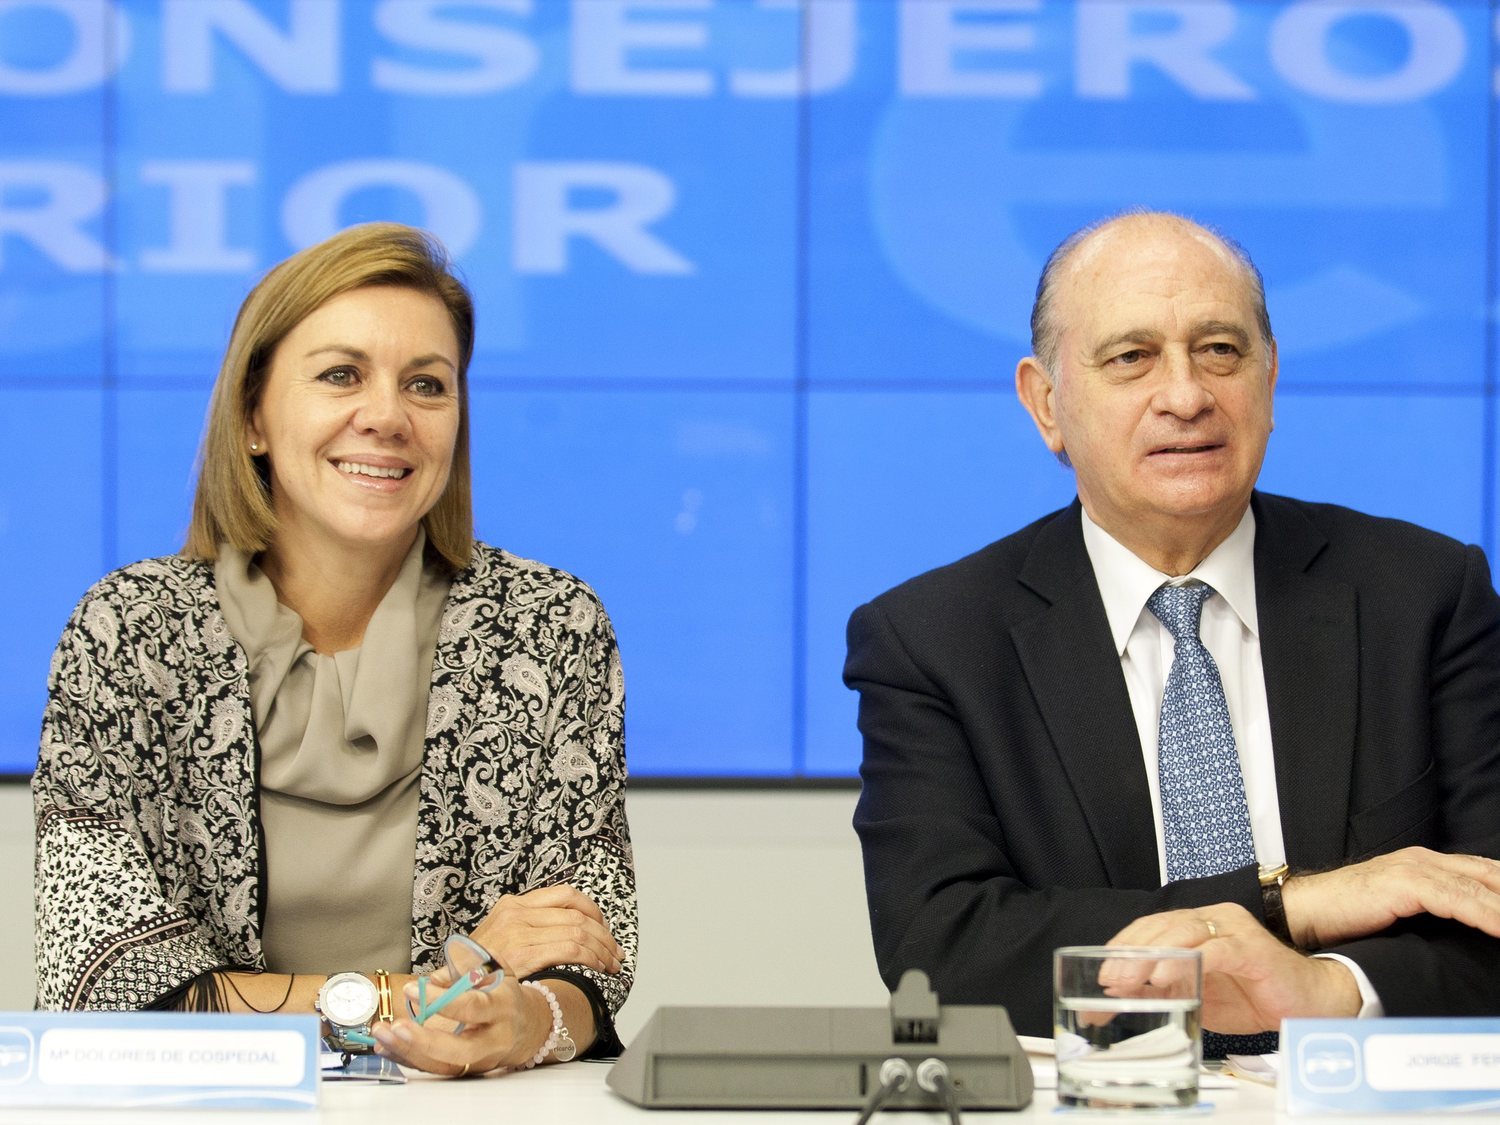 Los detalles sobre Kitchen: dos ministros del PP podrían terminar imputados y Rajoy salpicado